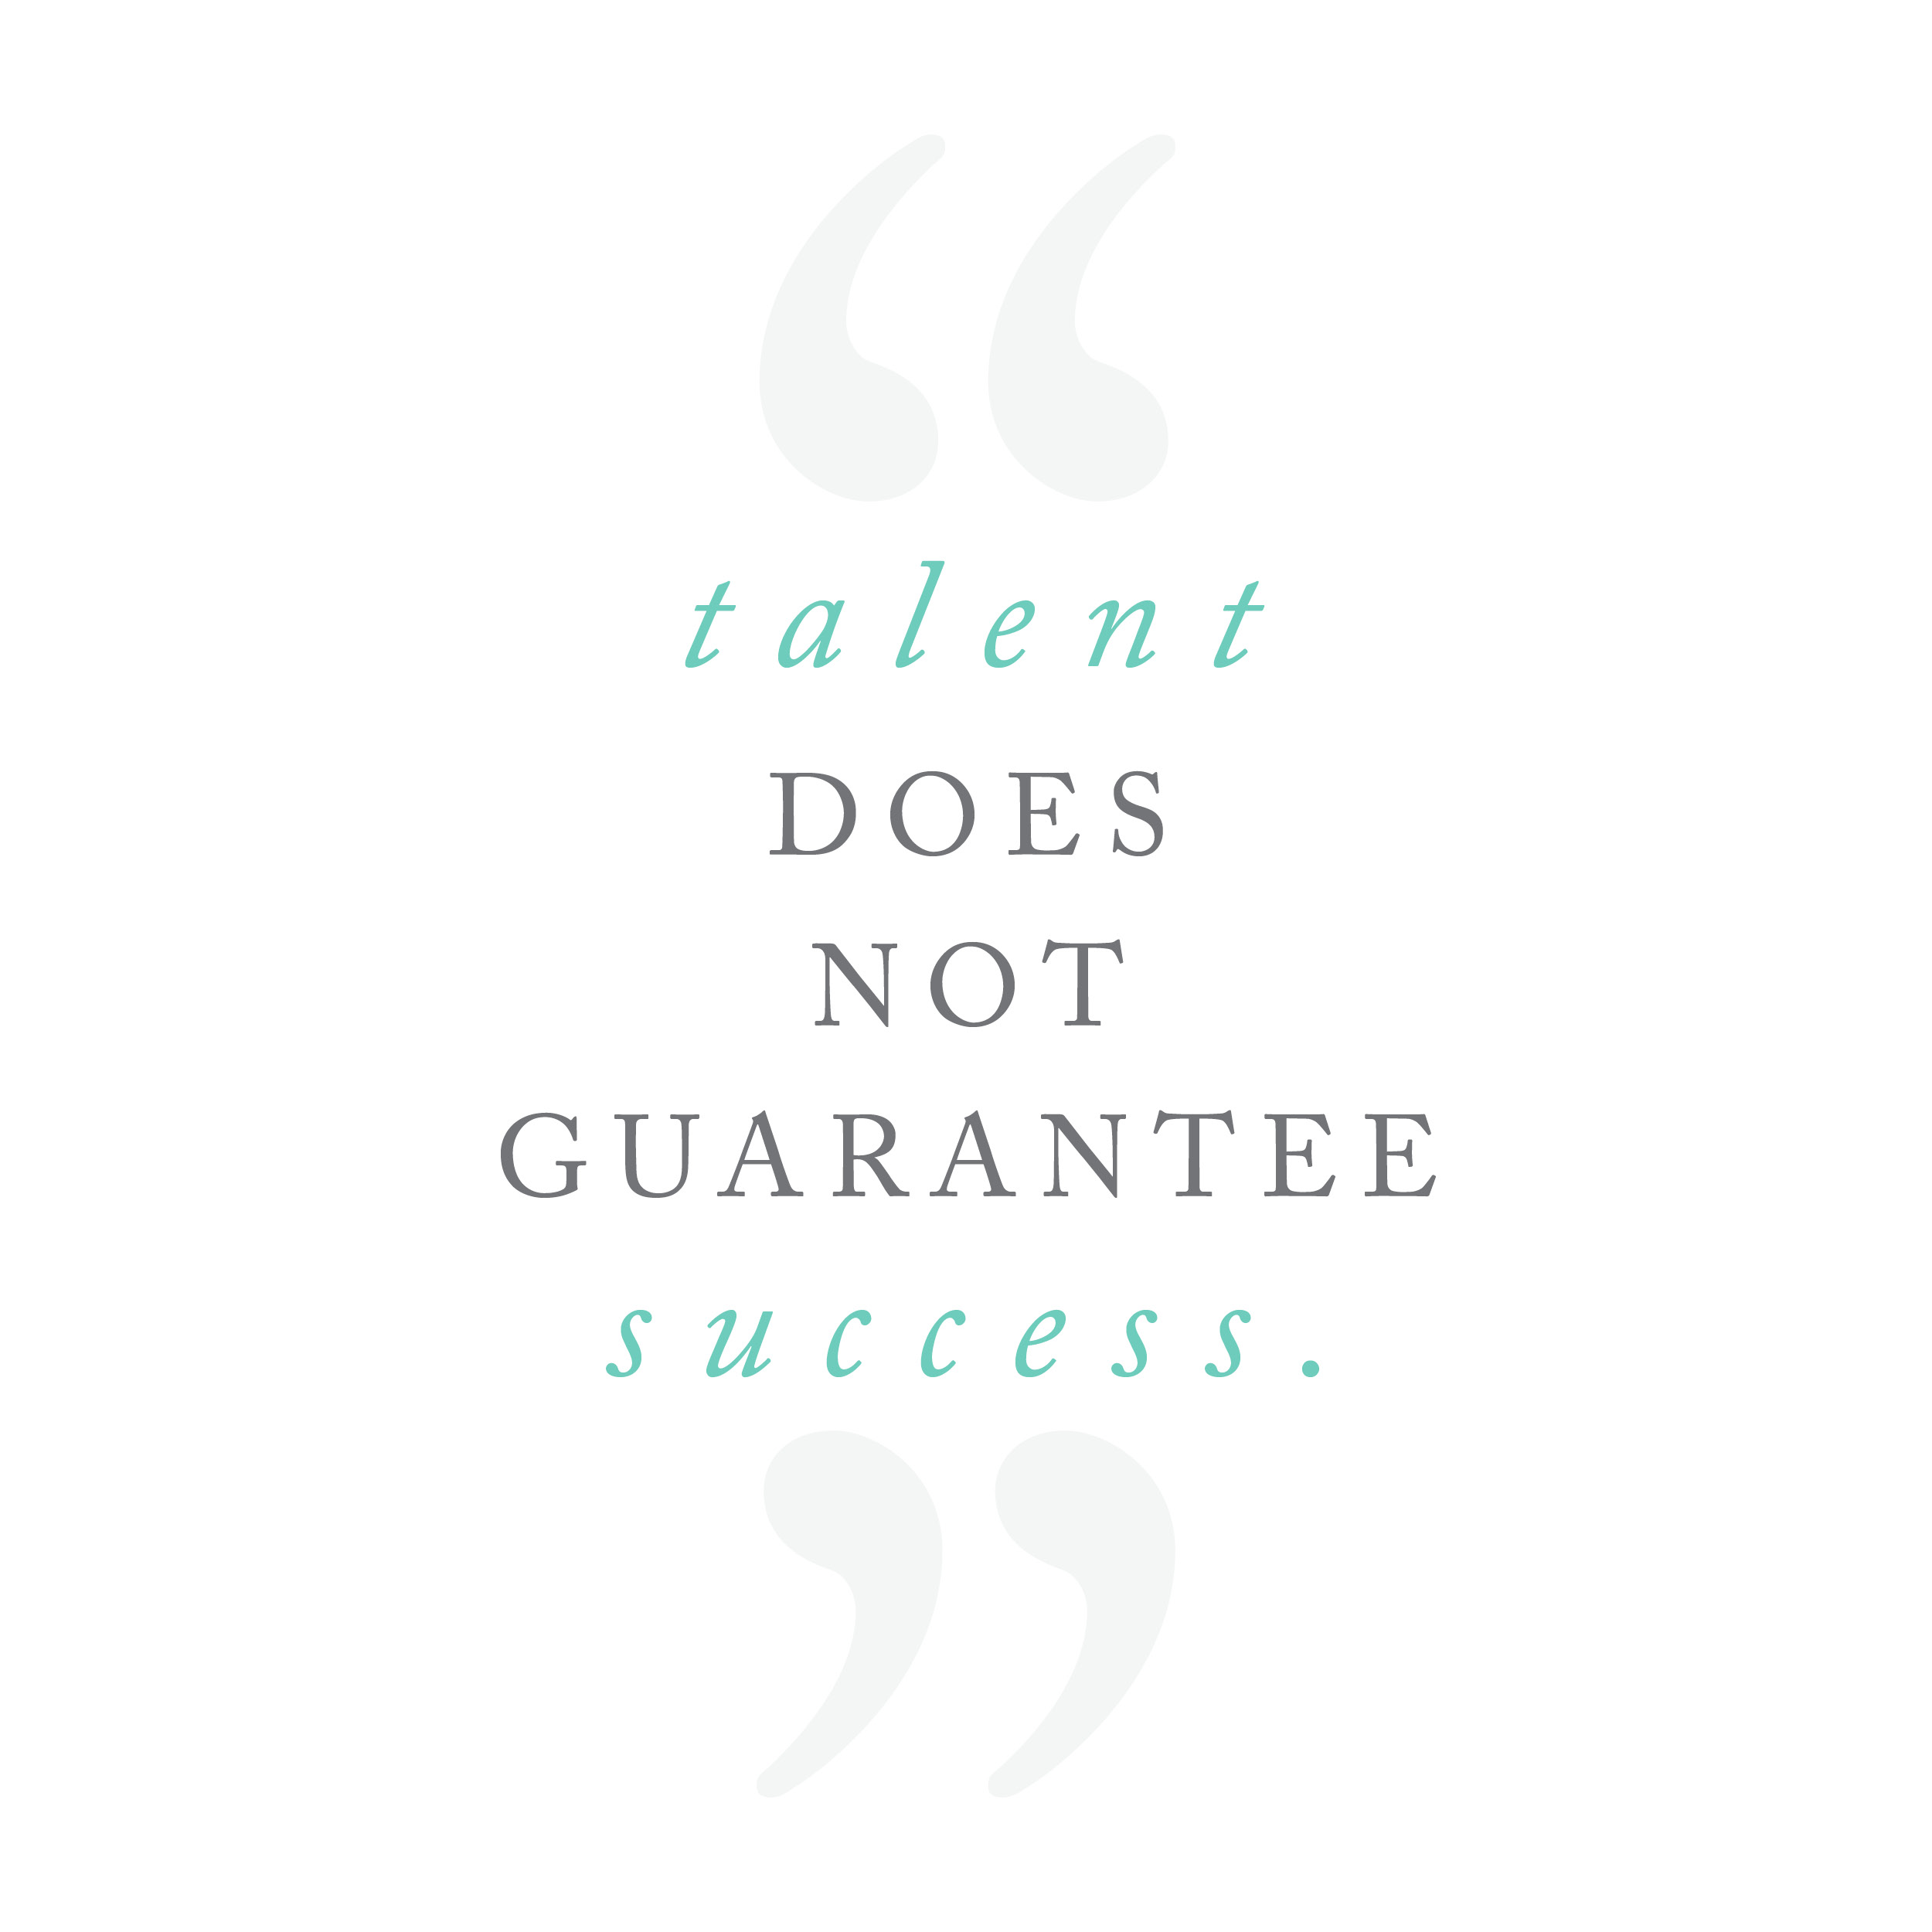 Talent does not guarantee success